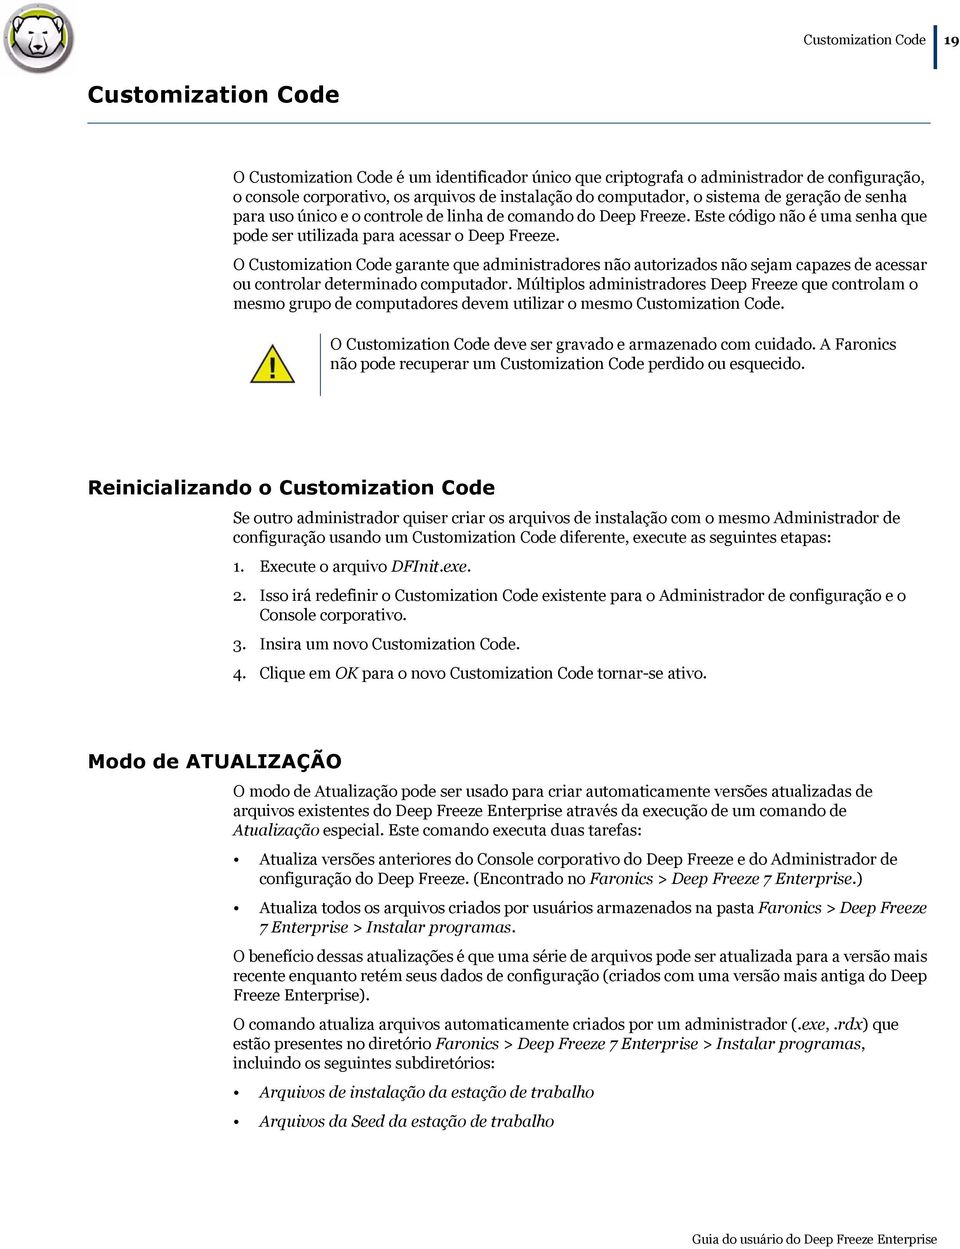 O Customization Code garante que administradores não autorizados não sejam capazes de acessar ou controlar determinado computador.